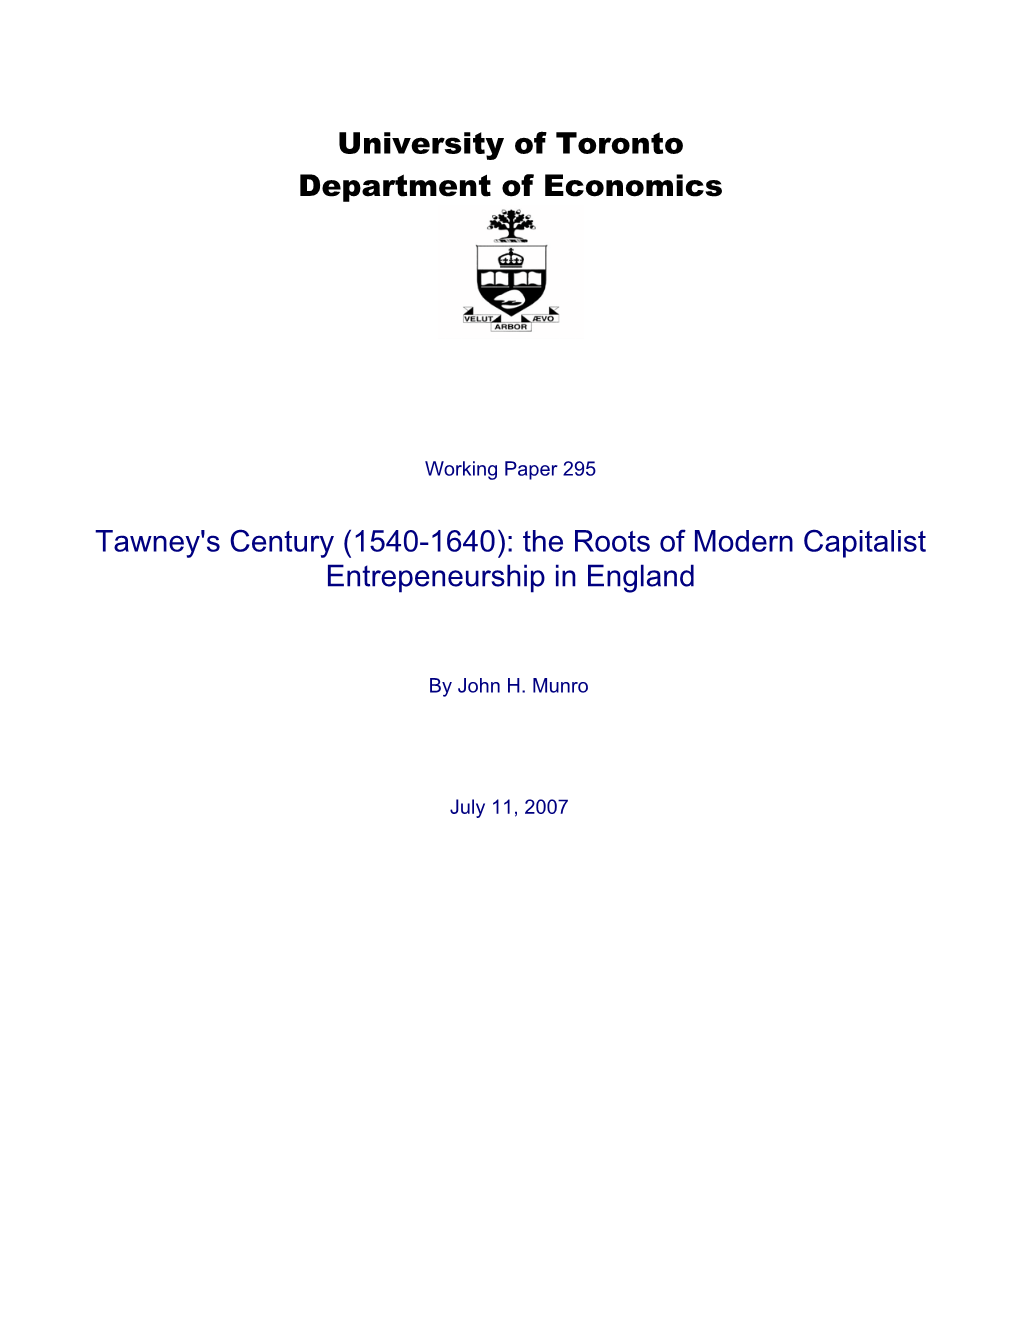 University of Toronto Department of Economics Tawney's Century (1540